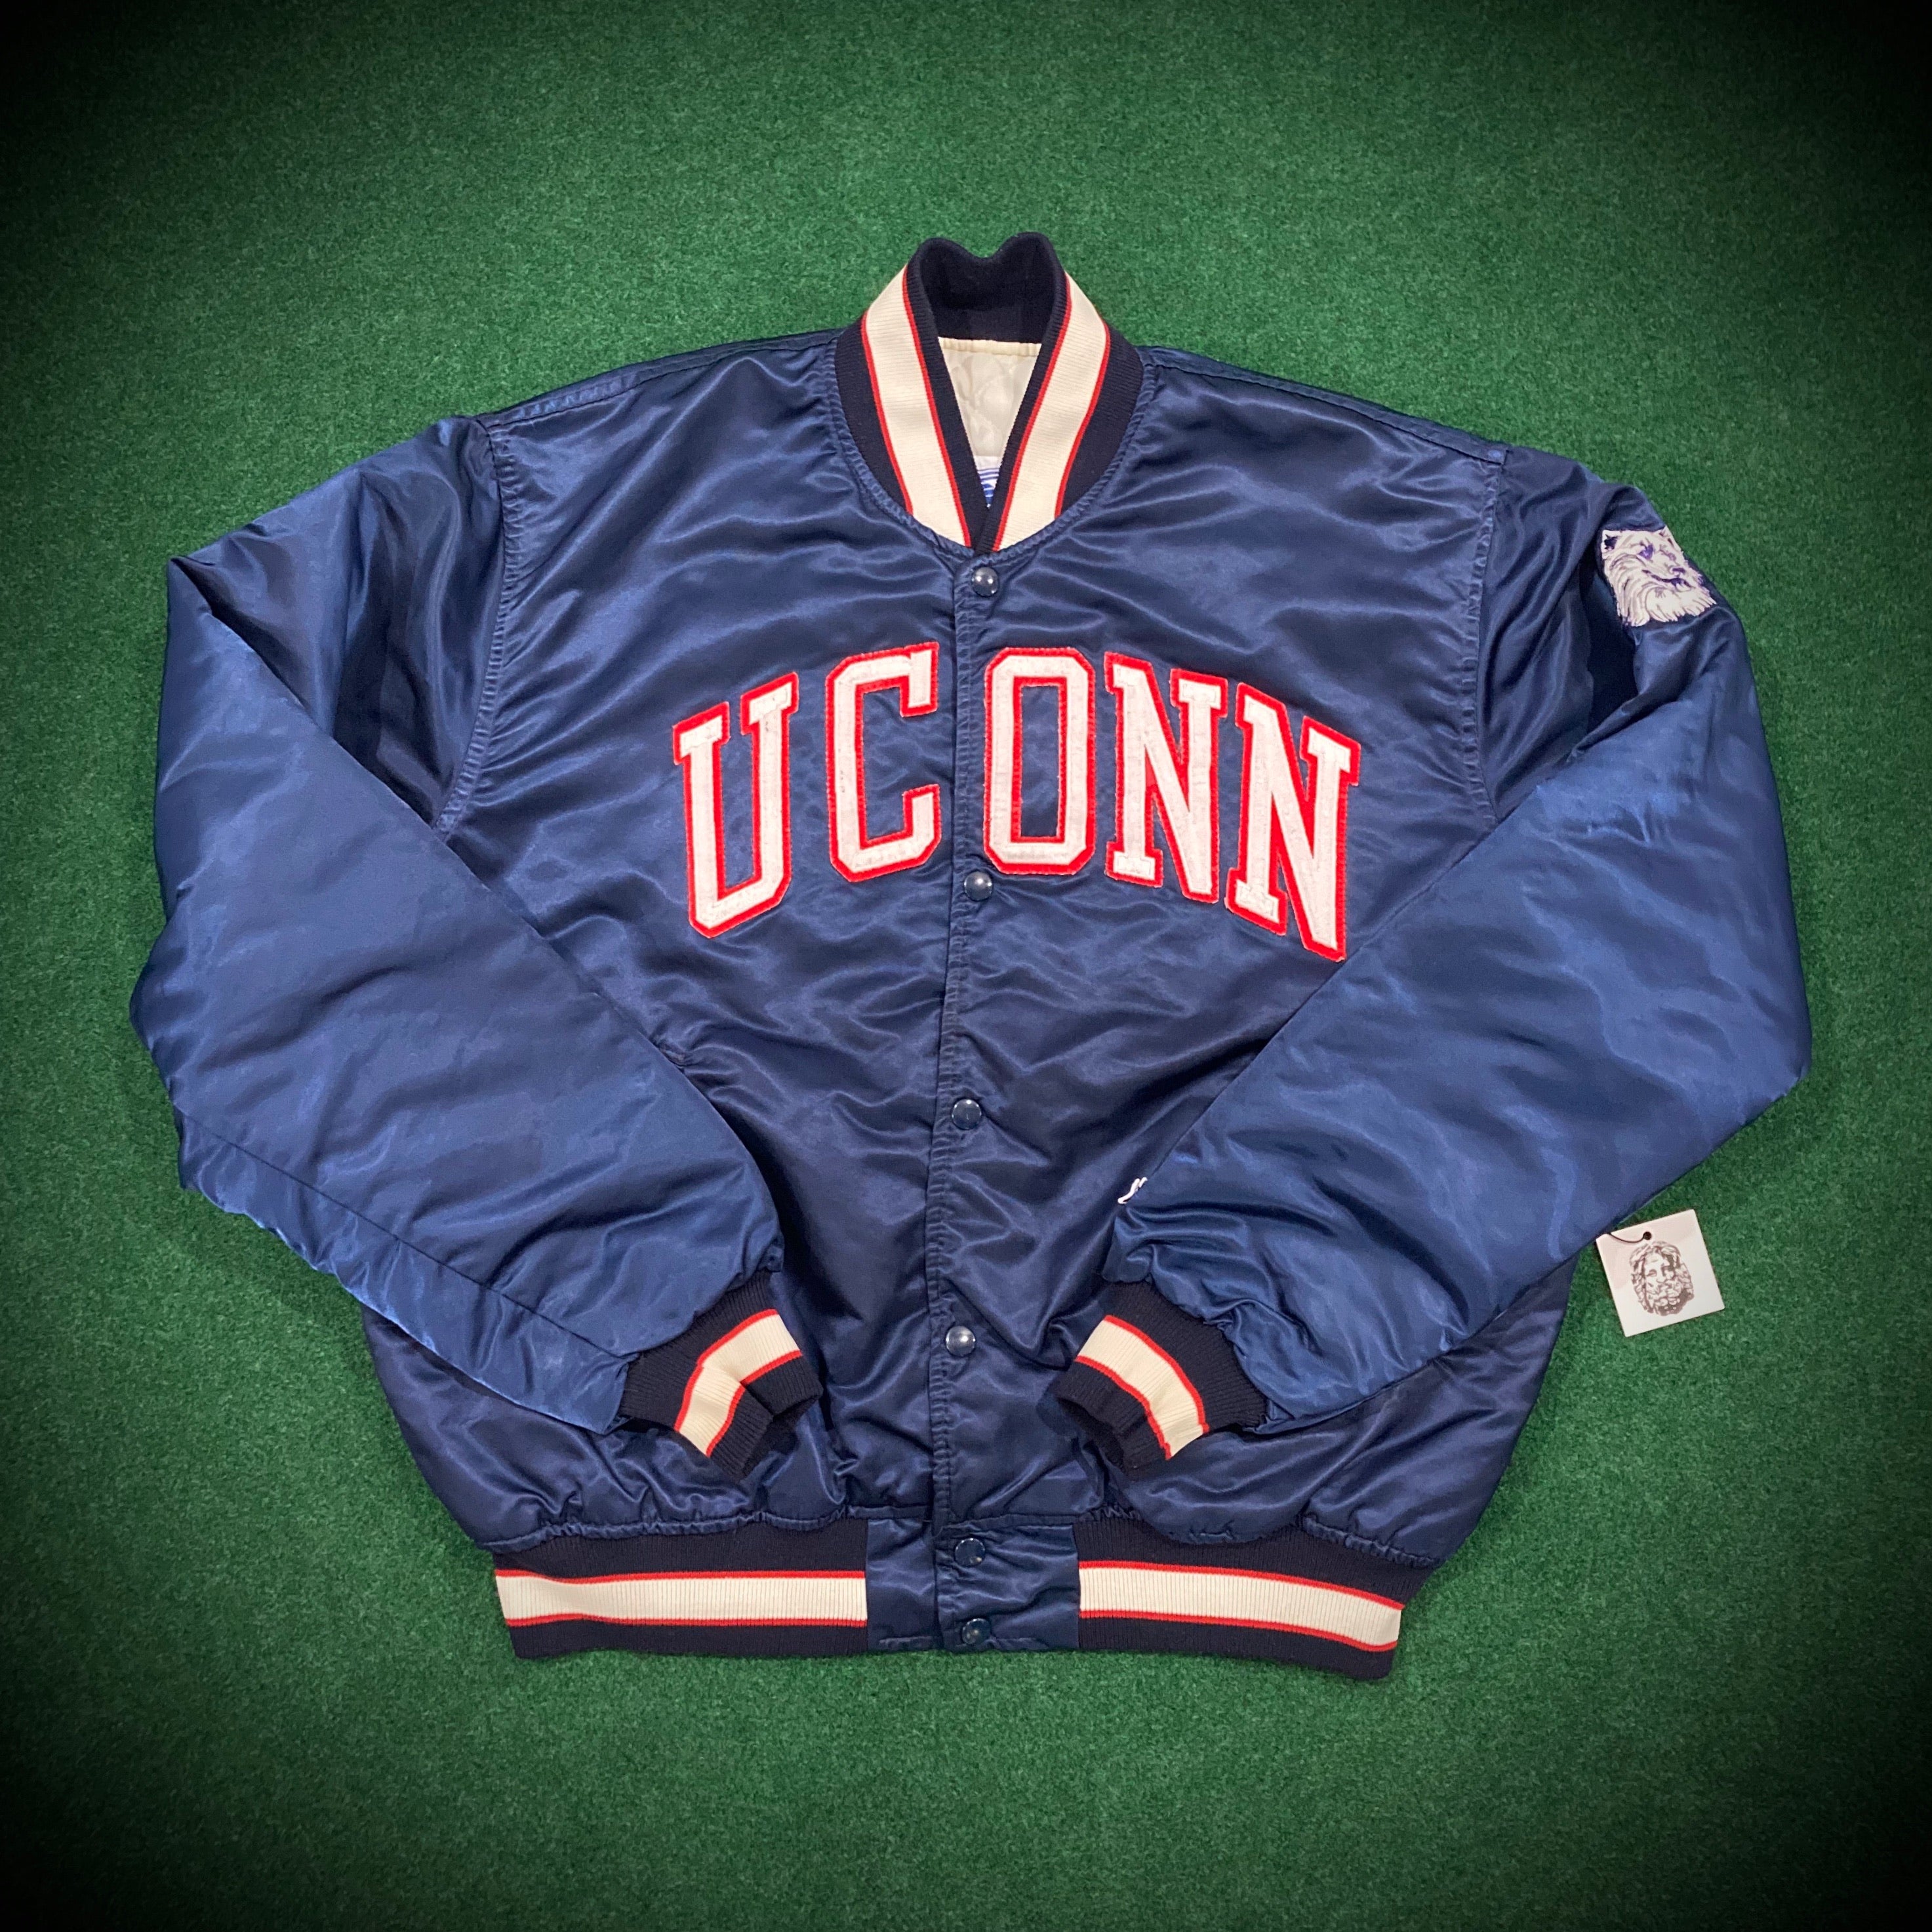 Vintage UCONN Starter Jacket